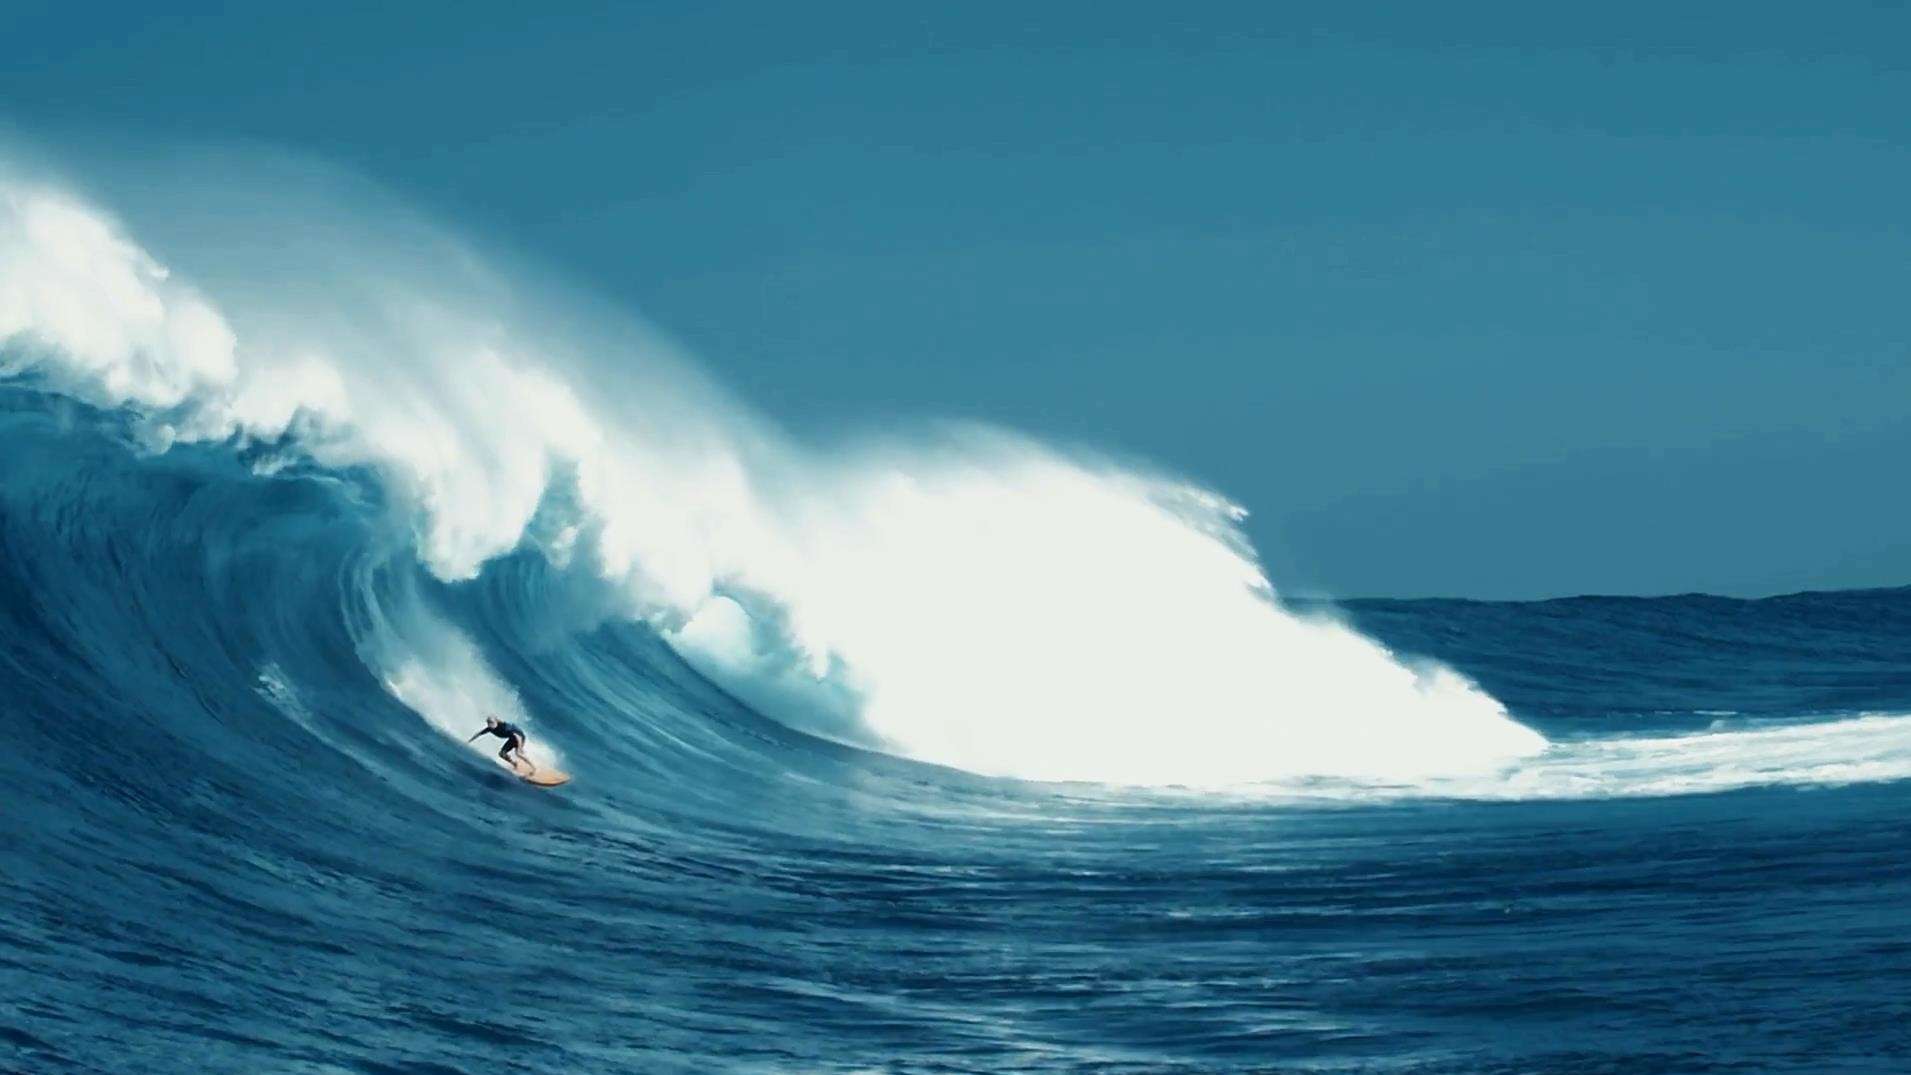 燃情澎湃夏威夷冲浪短片《海之声》